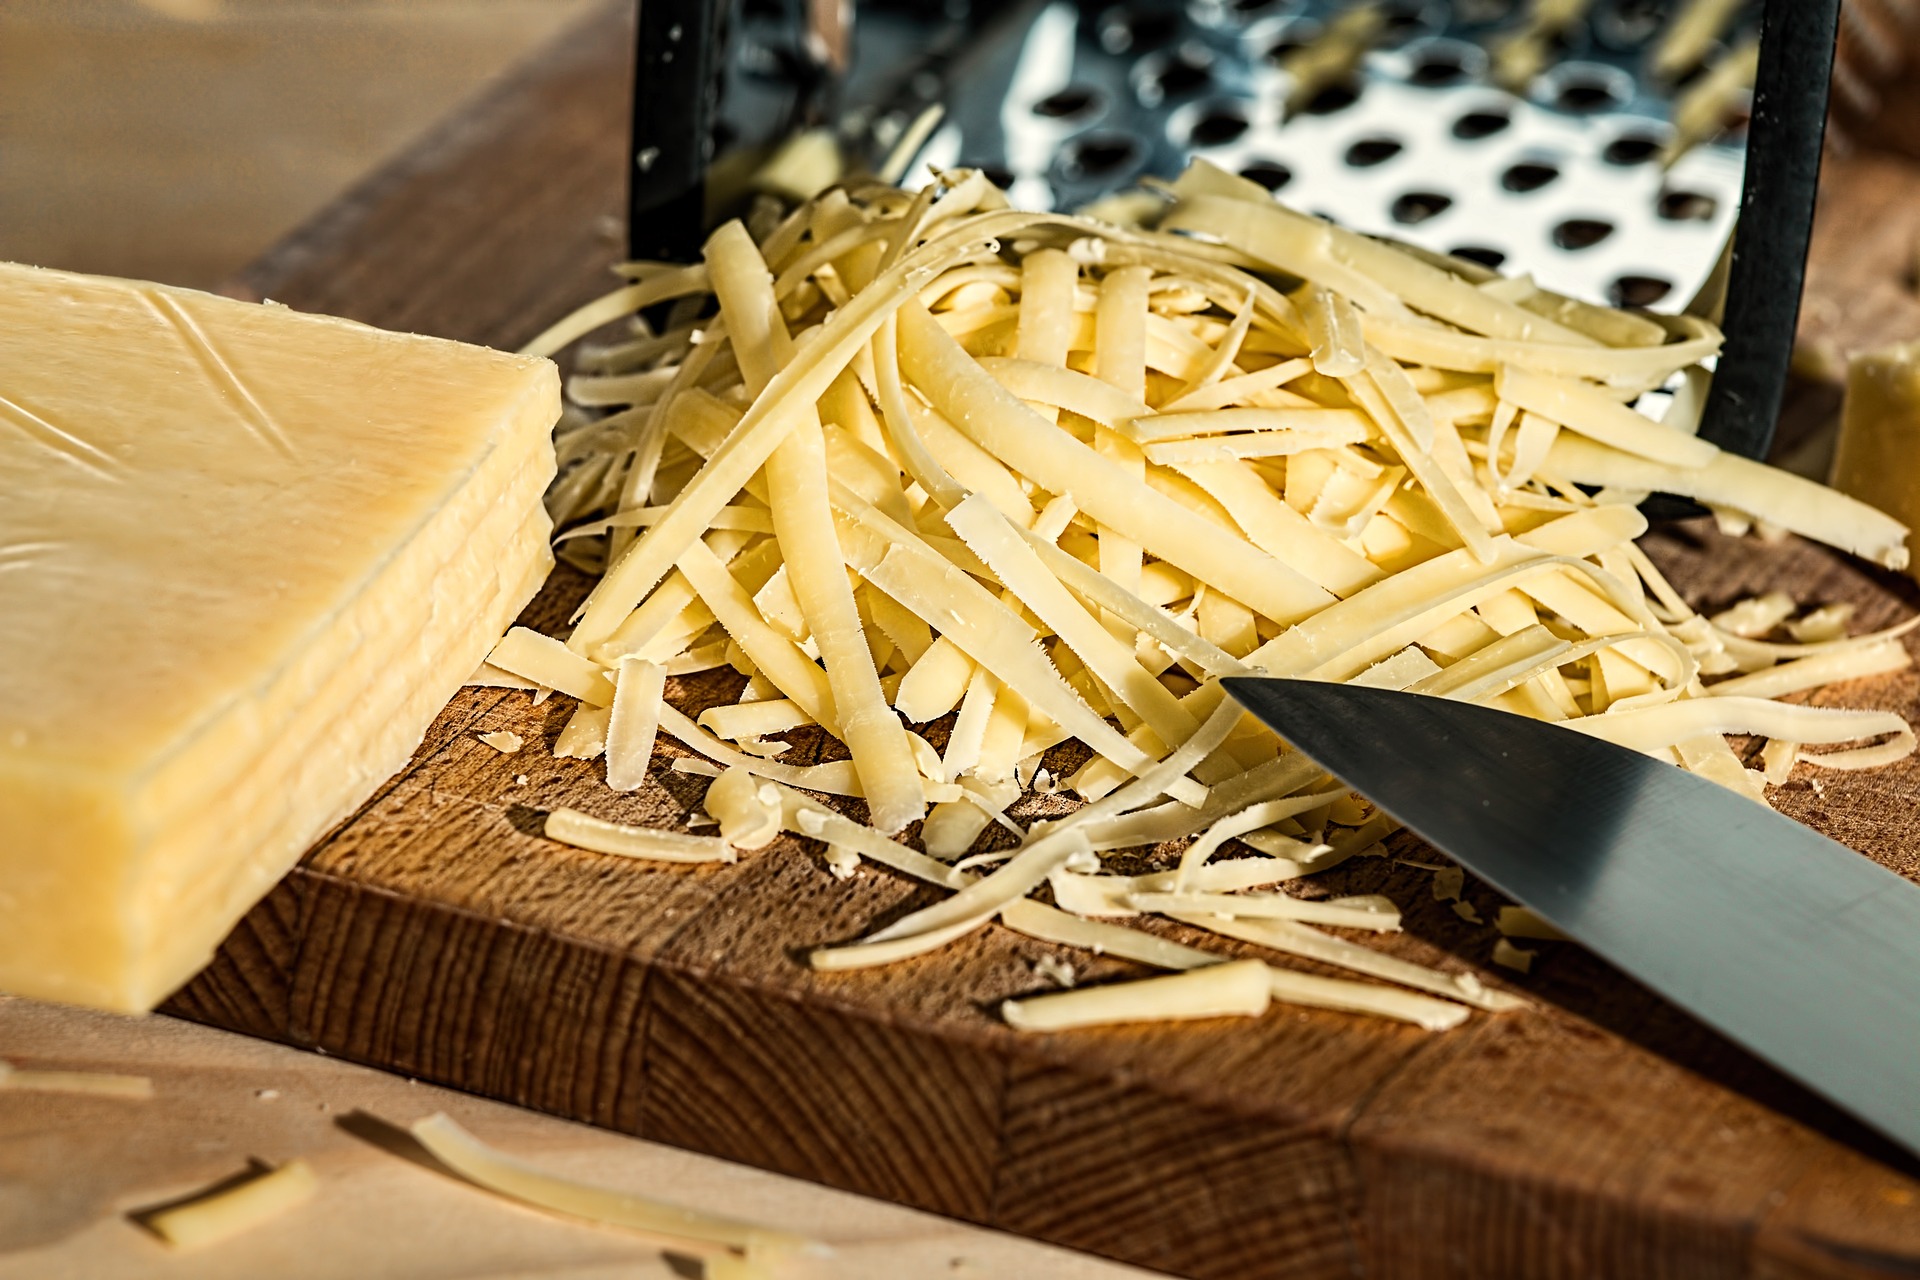 나무 테이블 위에 노란 치즈 덩어리를 두고 칼로 치즈를 반쯤 잘라놓고&#44; 그것을 편으로 잘라 수북하게 쌓아놓고 찍은 사진